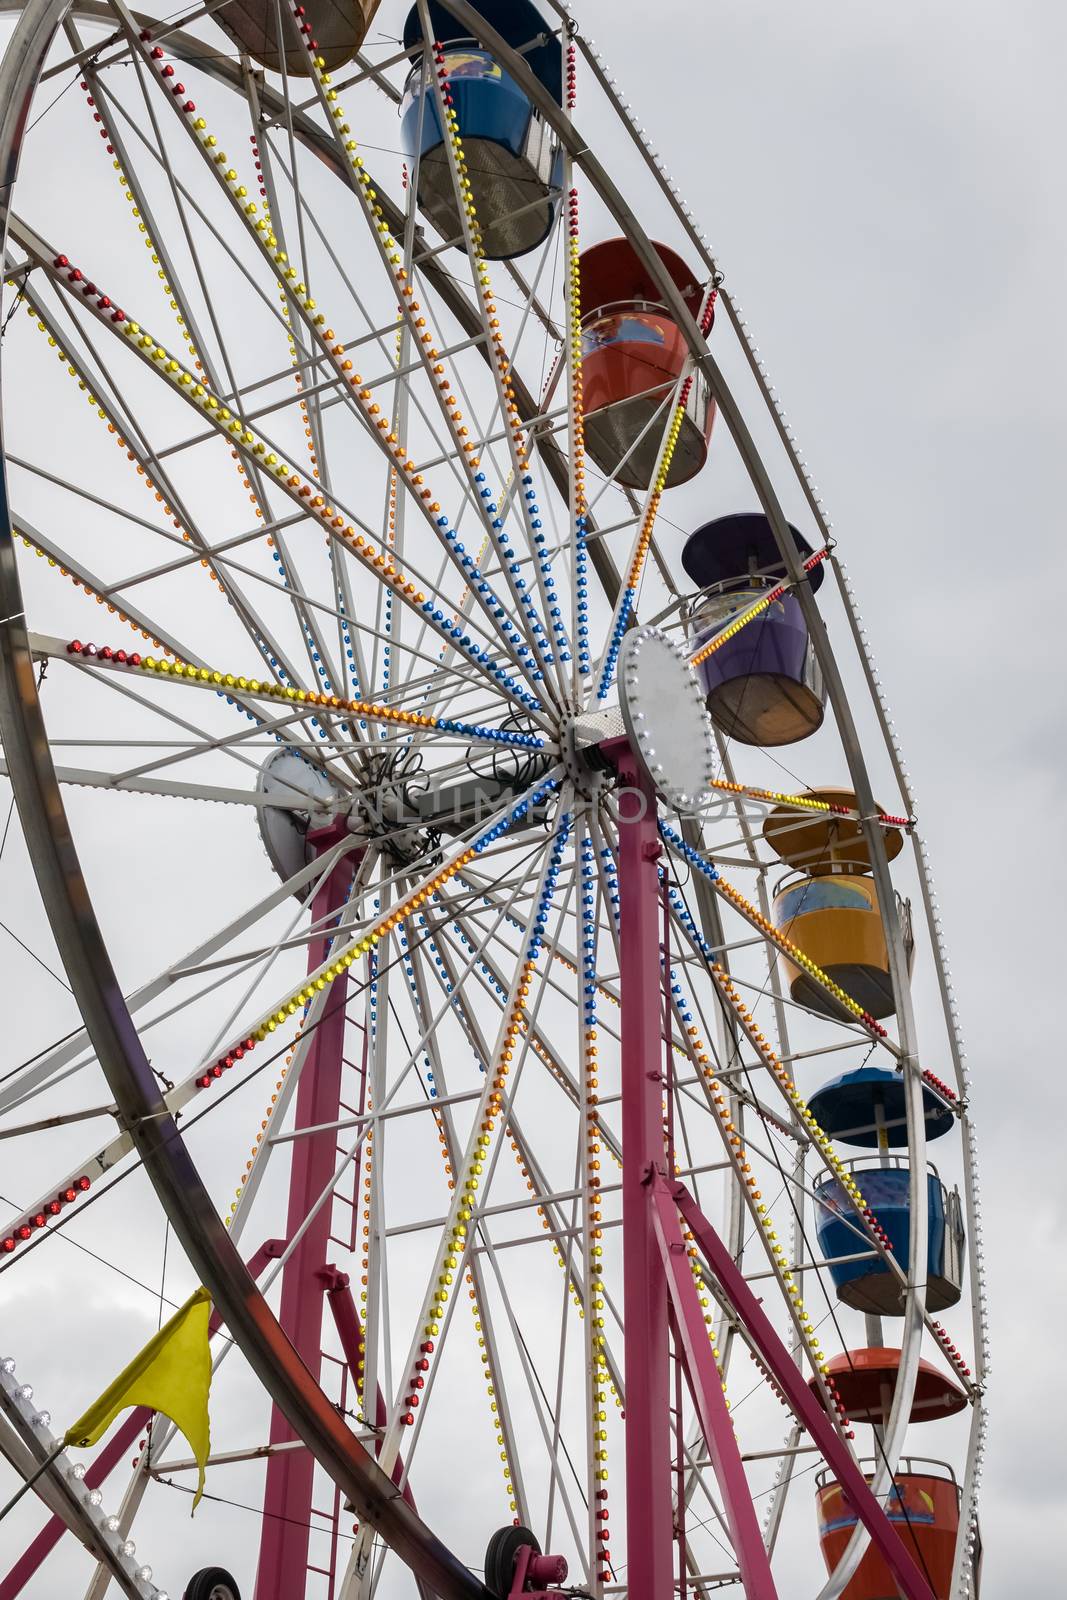 A colorful Ferris Wheel at a country fair